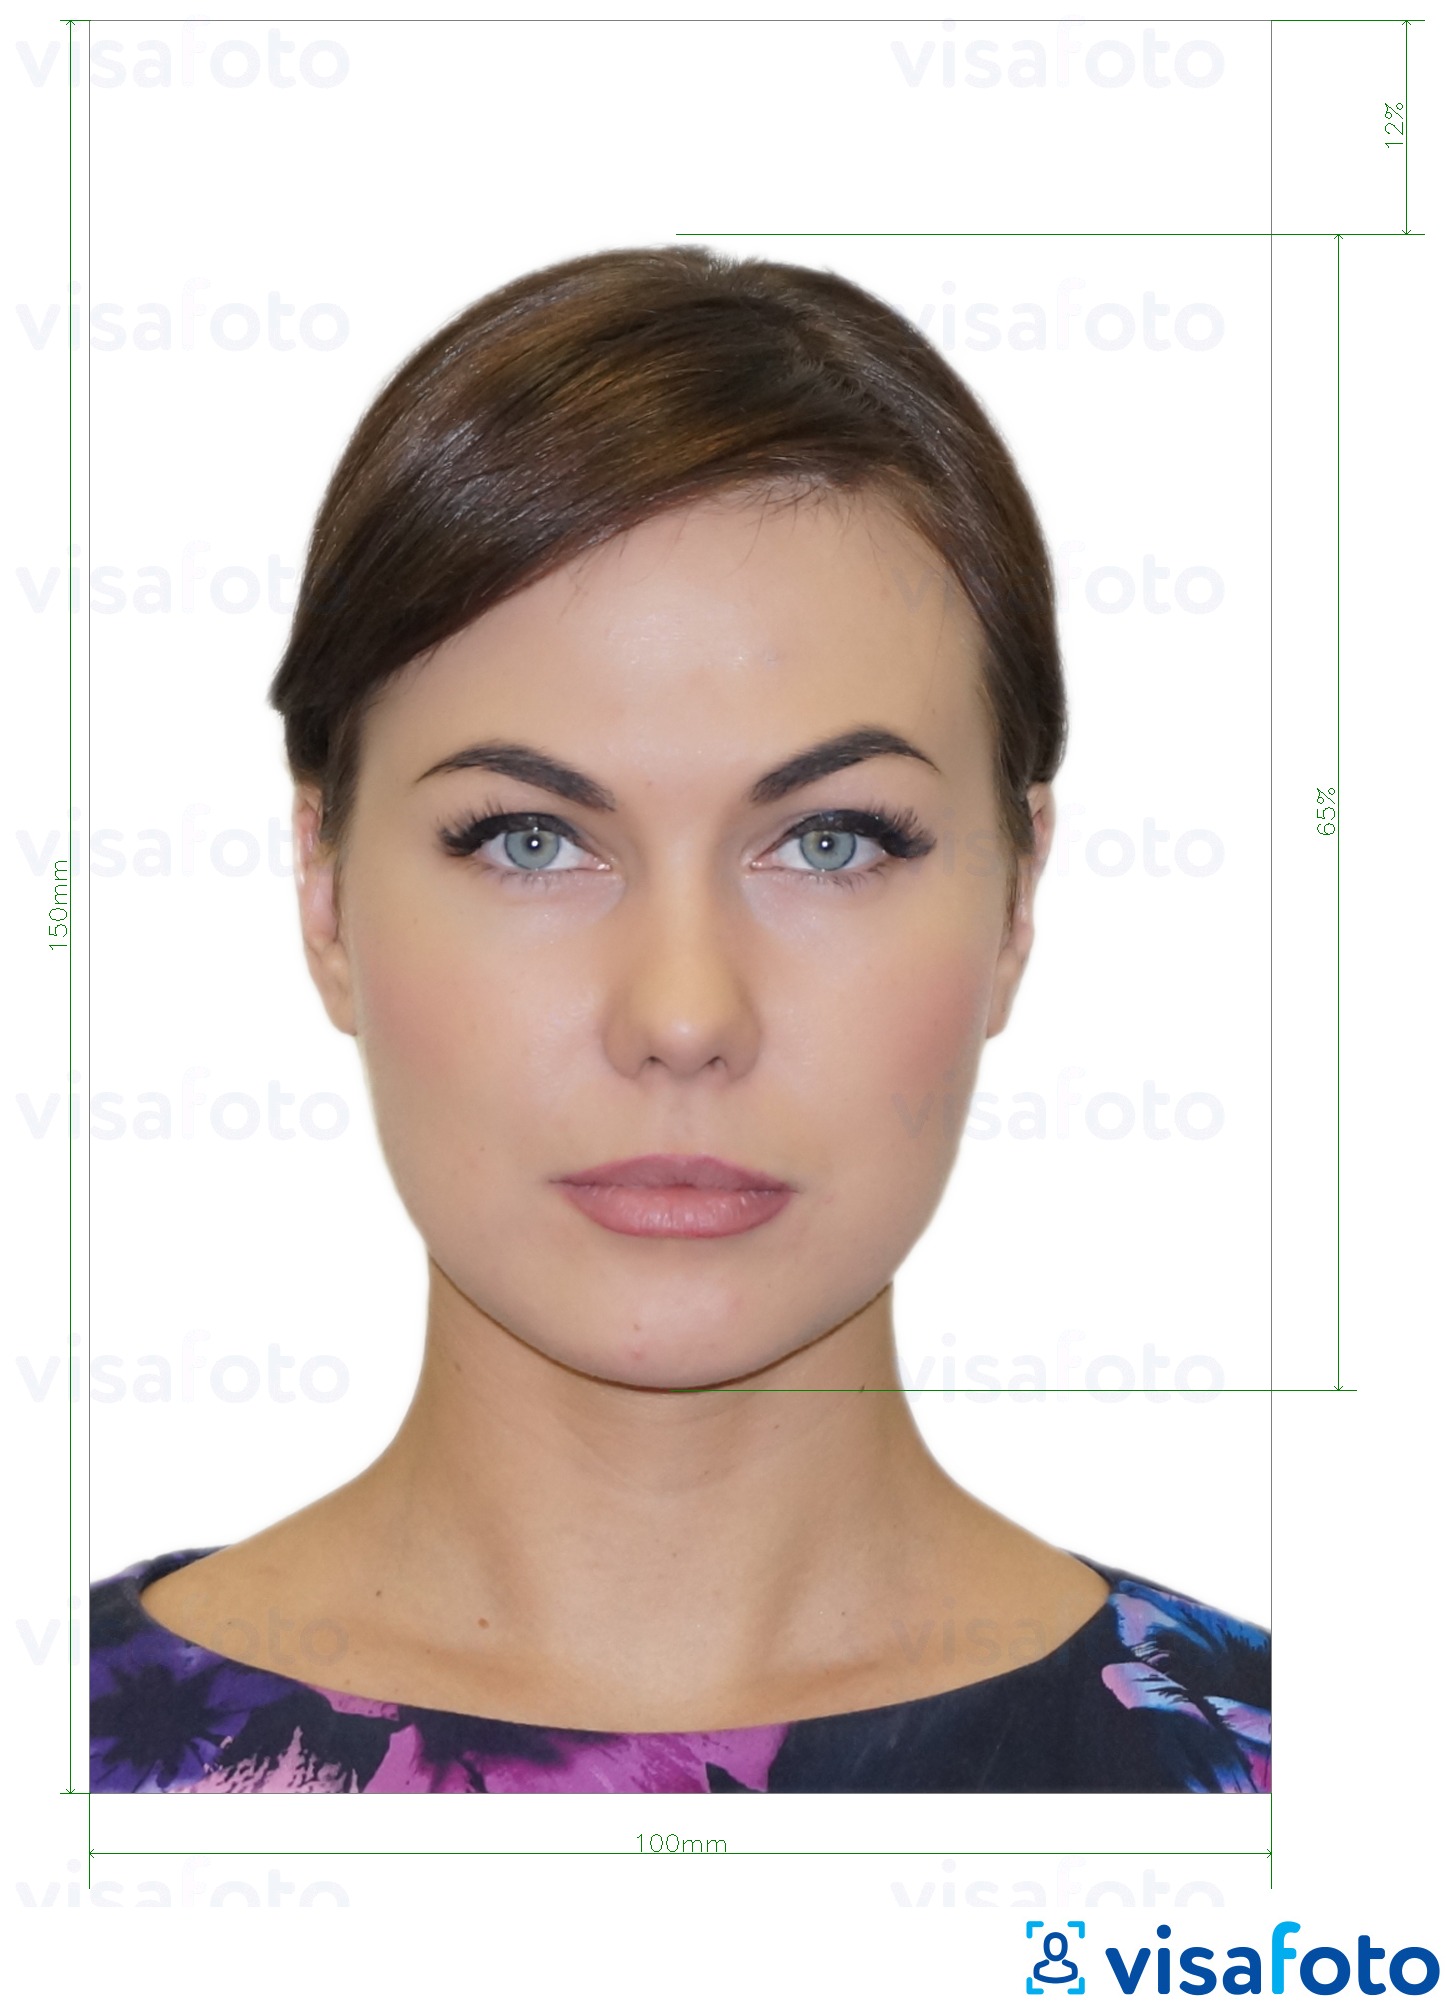 Ejemplo de foto para DNI Moldavia (Buletin de identitate) 10x15 cm con la especificación del tamaño exacto